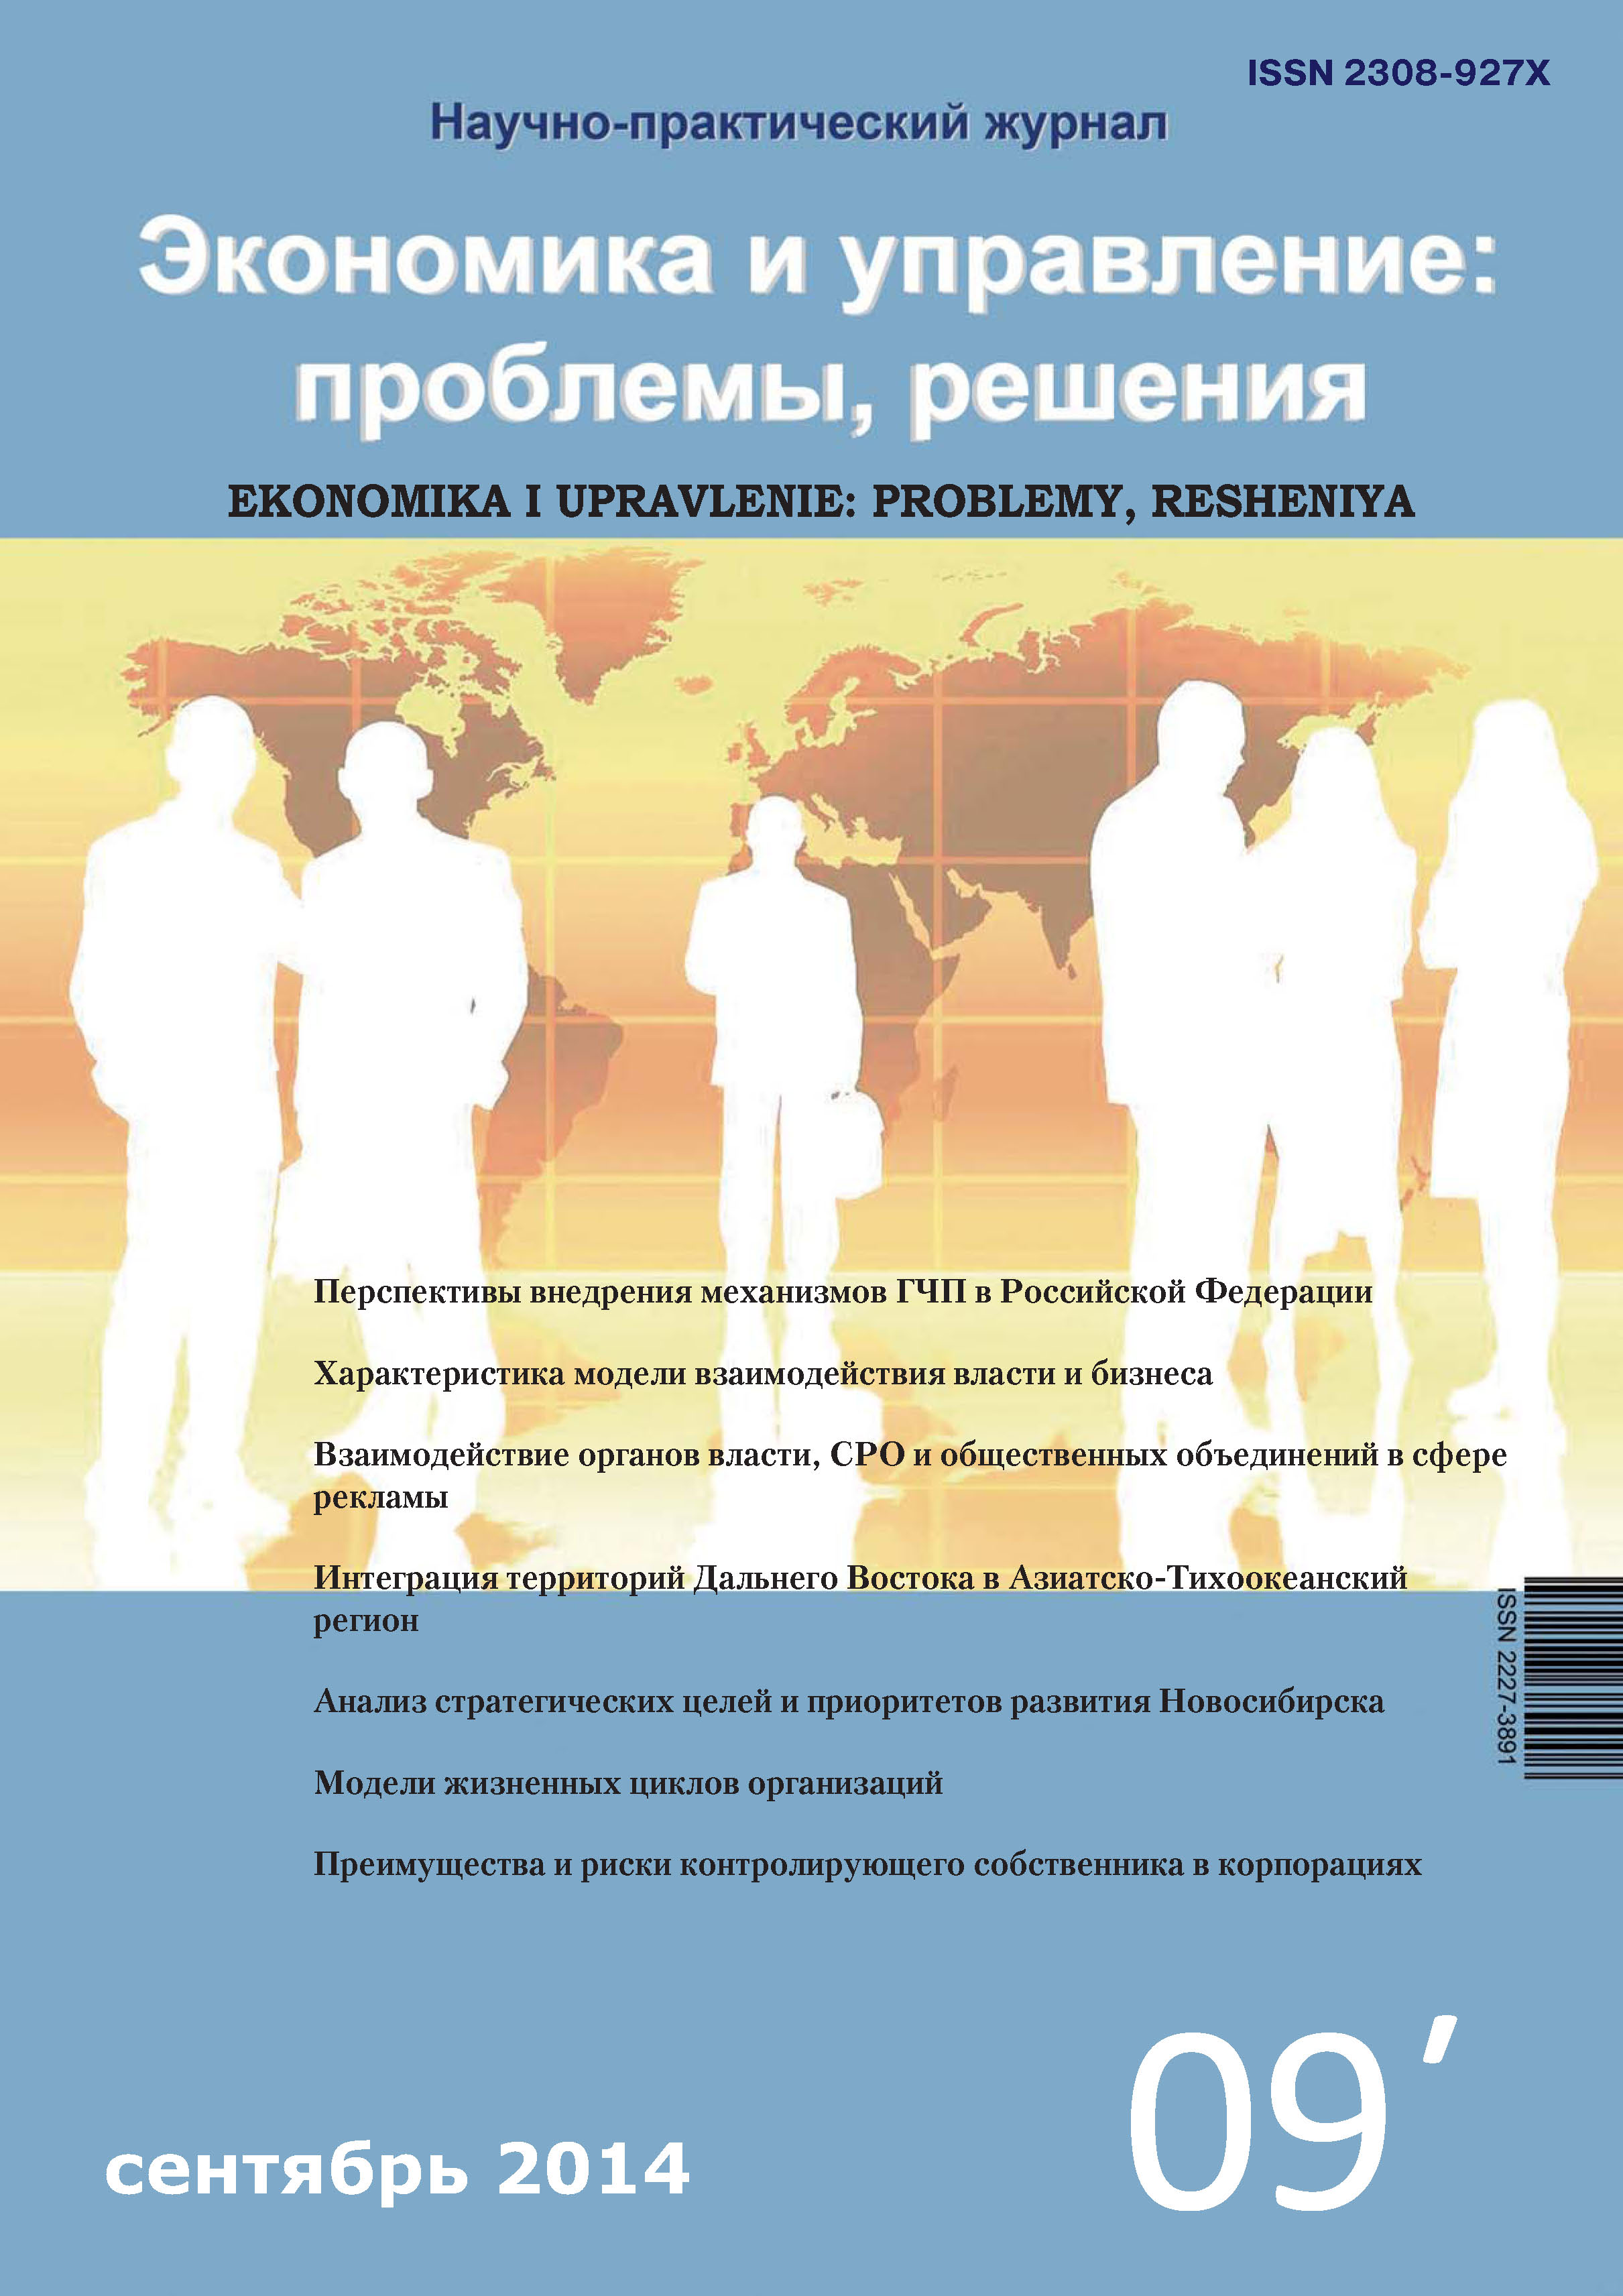 Экономика и управление: проблемы, решения №09/2014